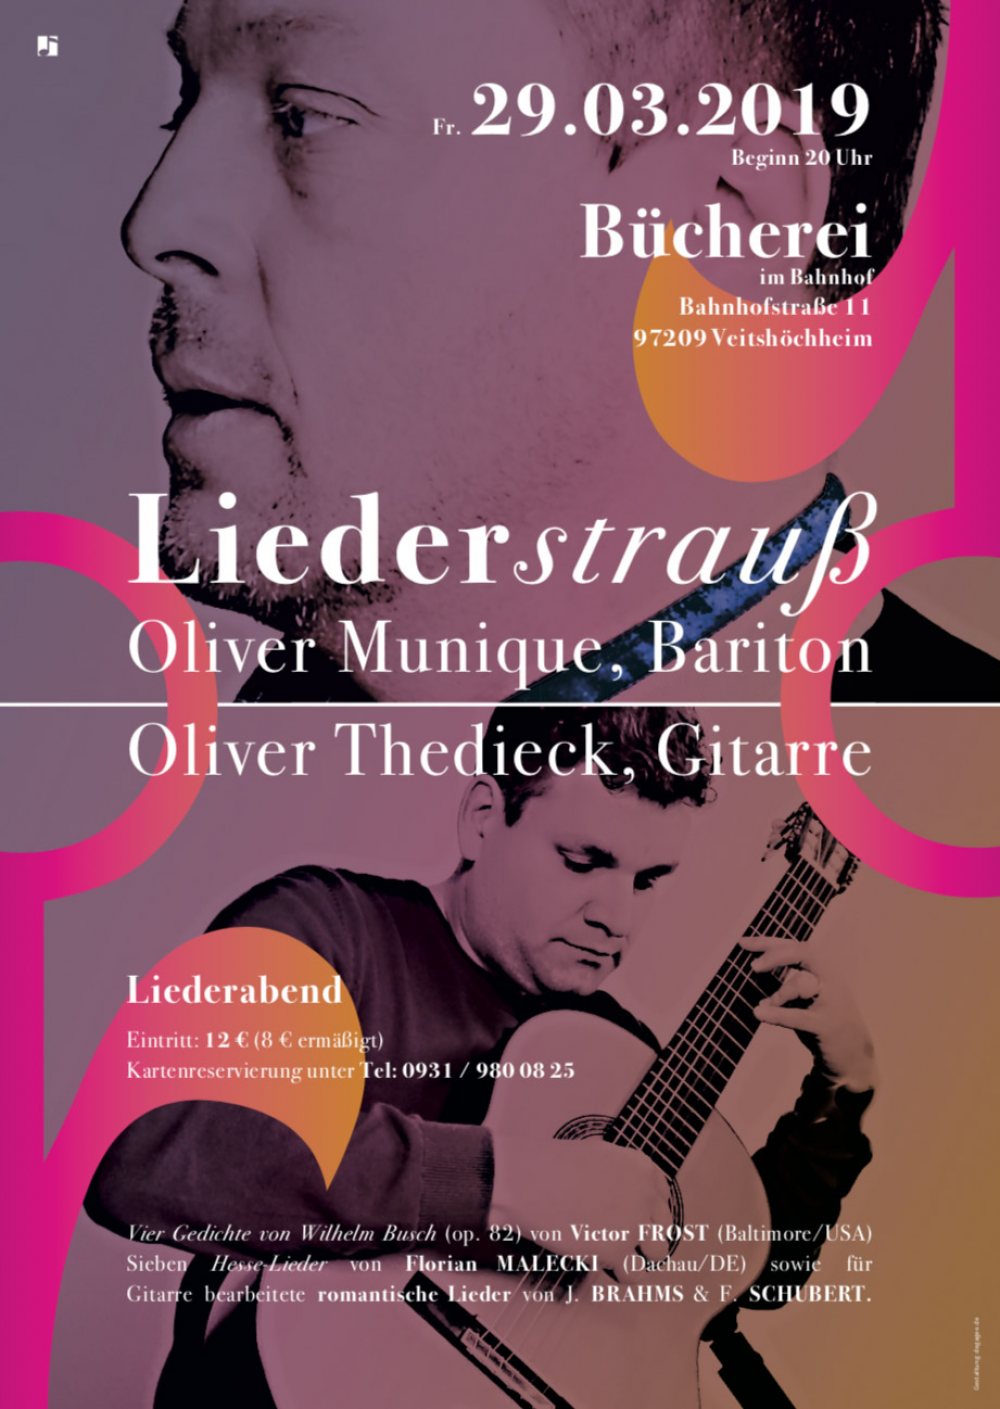 29.03.2019: Liederstrauss in Veitshöchheim – Liederabend mit Aufführung Hesse-Lieder